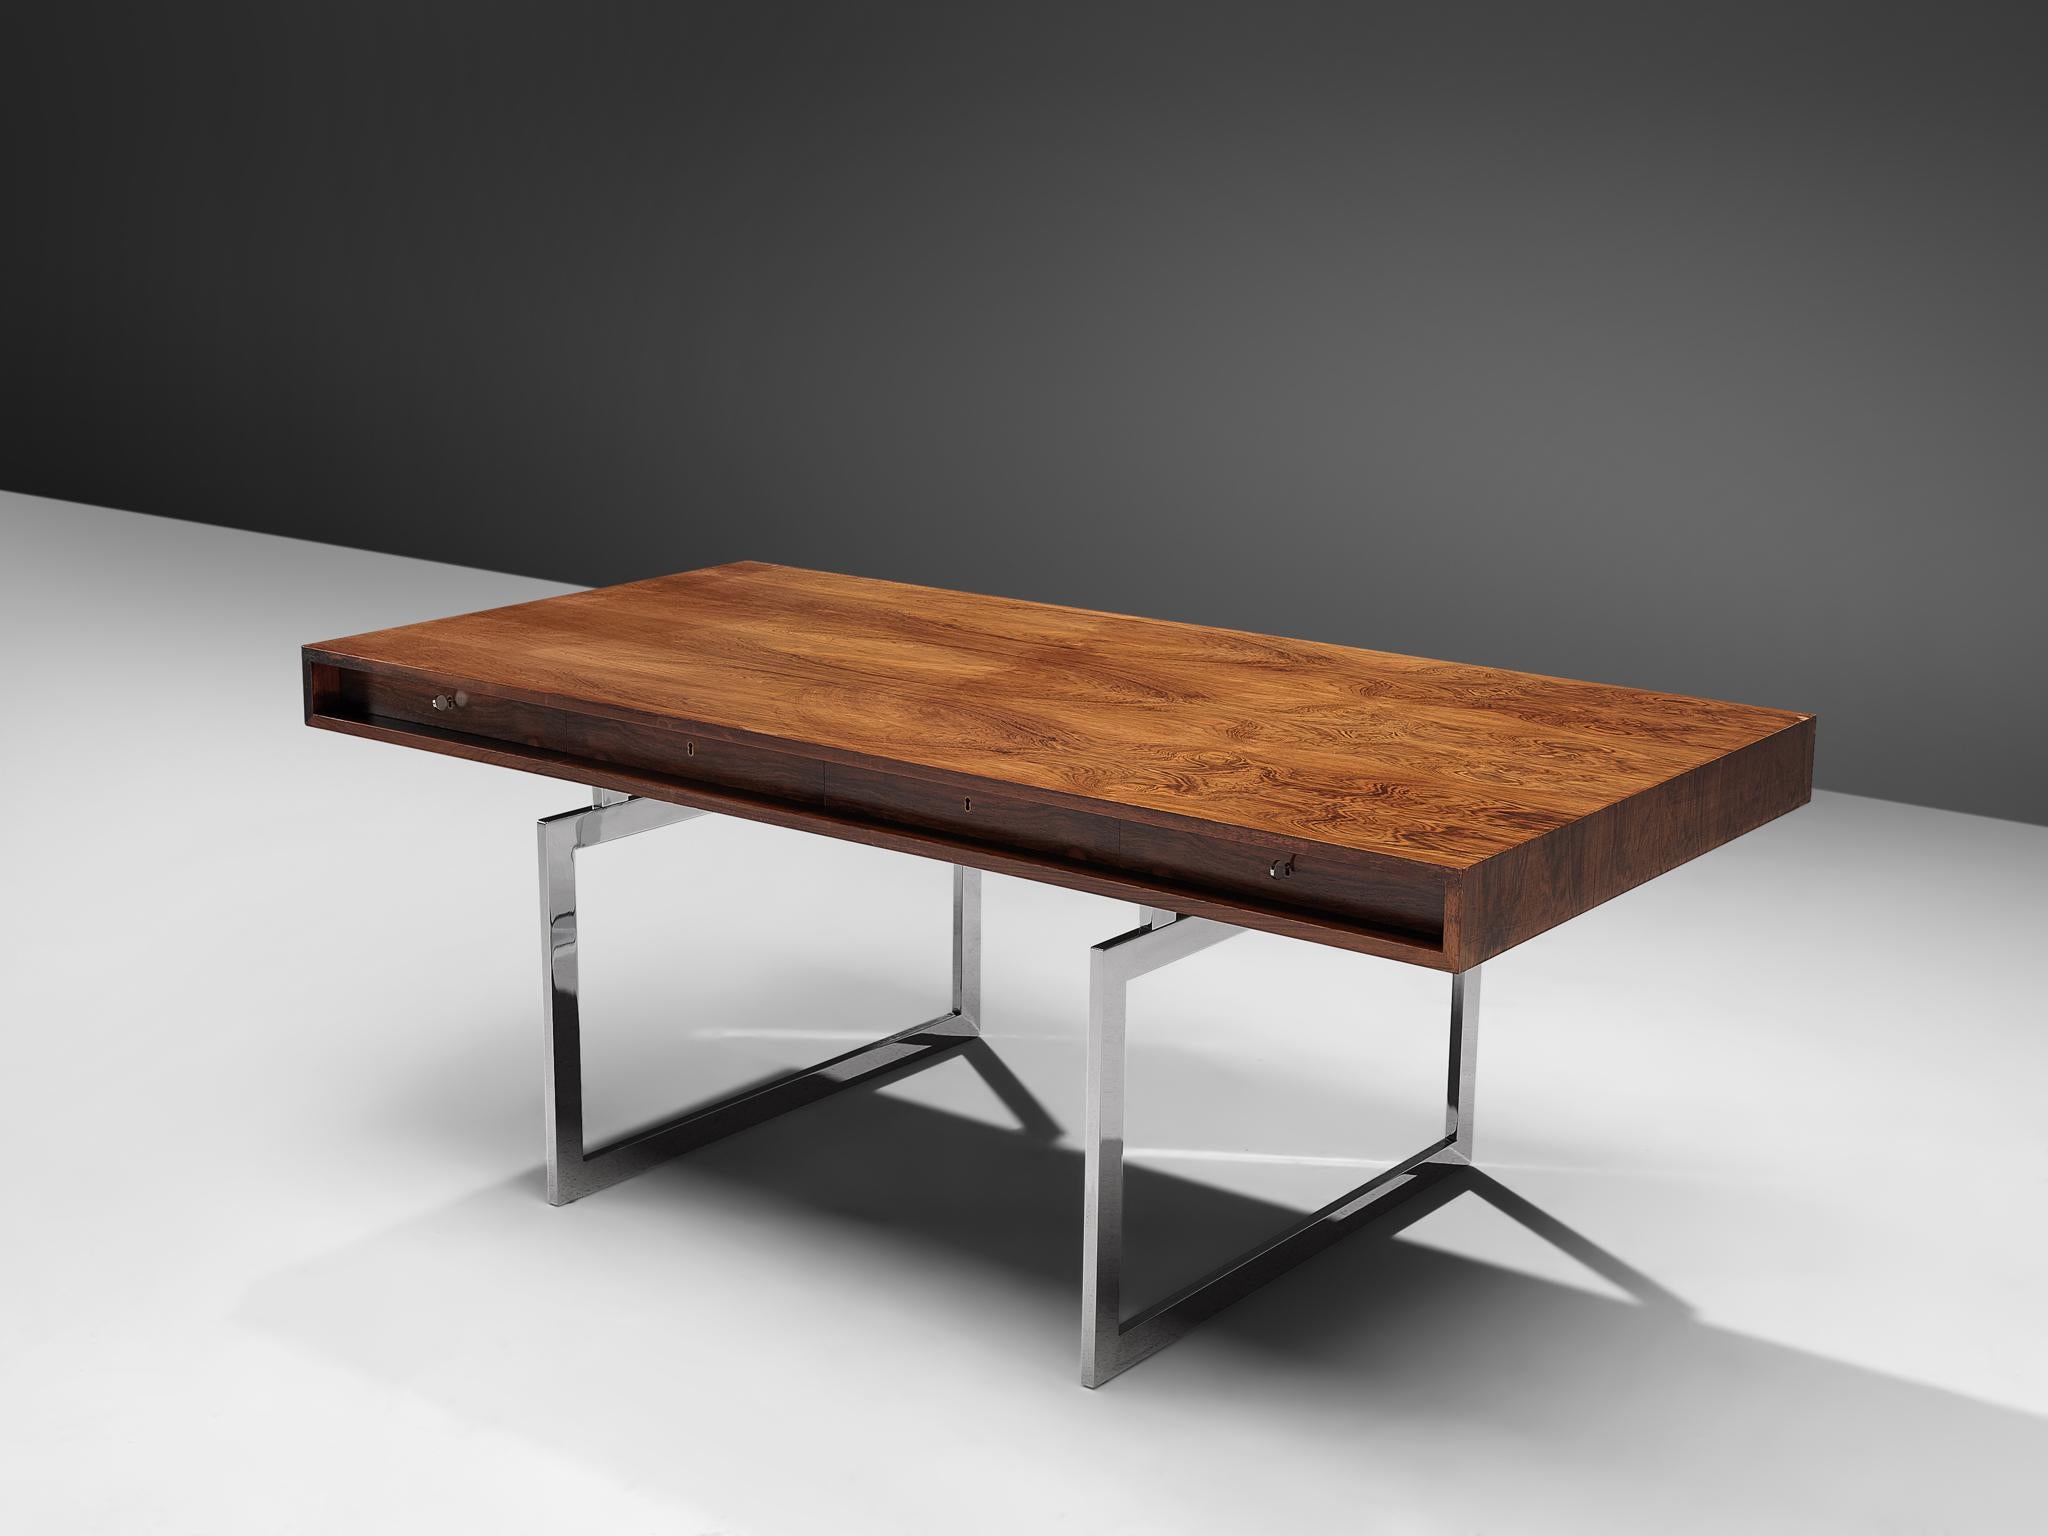 Bodil Kjaer for E. Pedersen & Søn, table model 901, Brasilian hardwood and chrome steel, Denmark, 1959.

This freestanding desk in rosewood is designed by the Danish designer Bodil Kjaer. The desk can be used with multiple purposes, as a writing